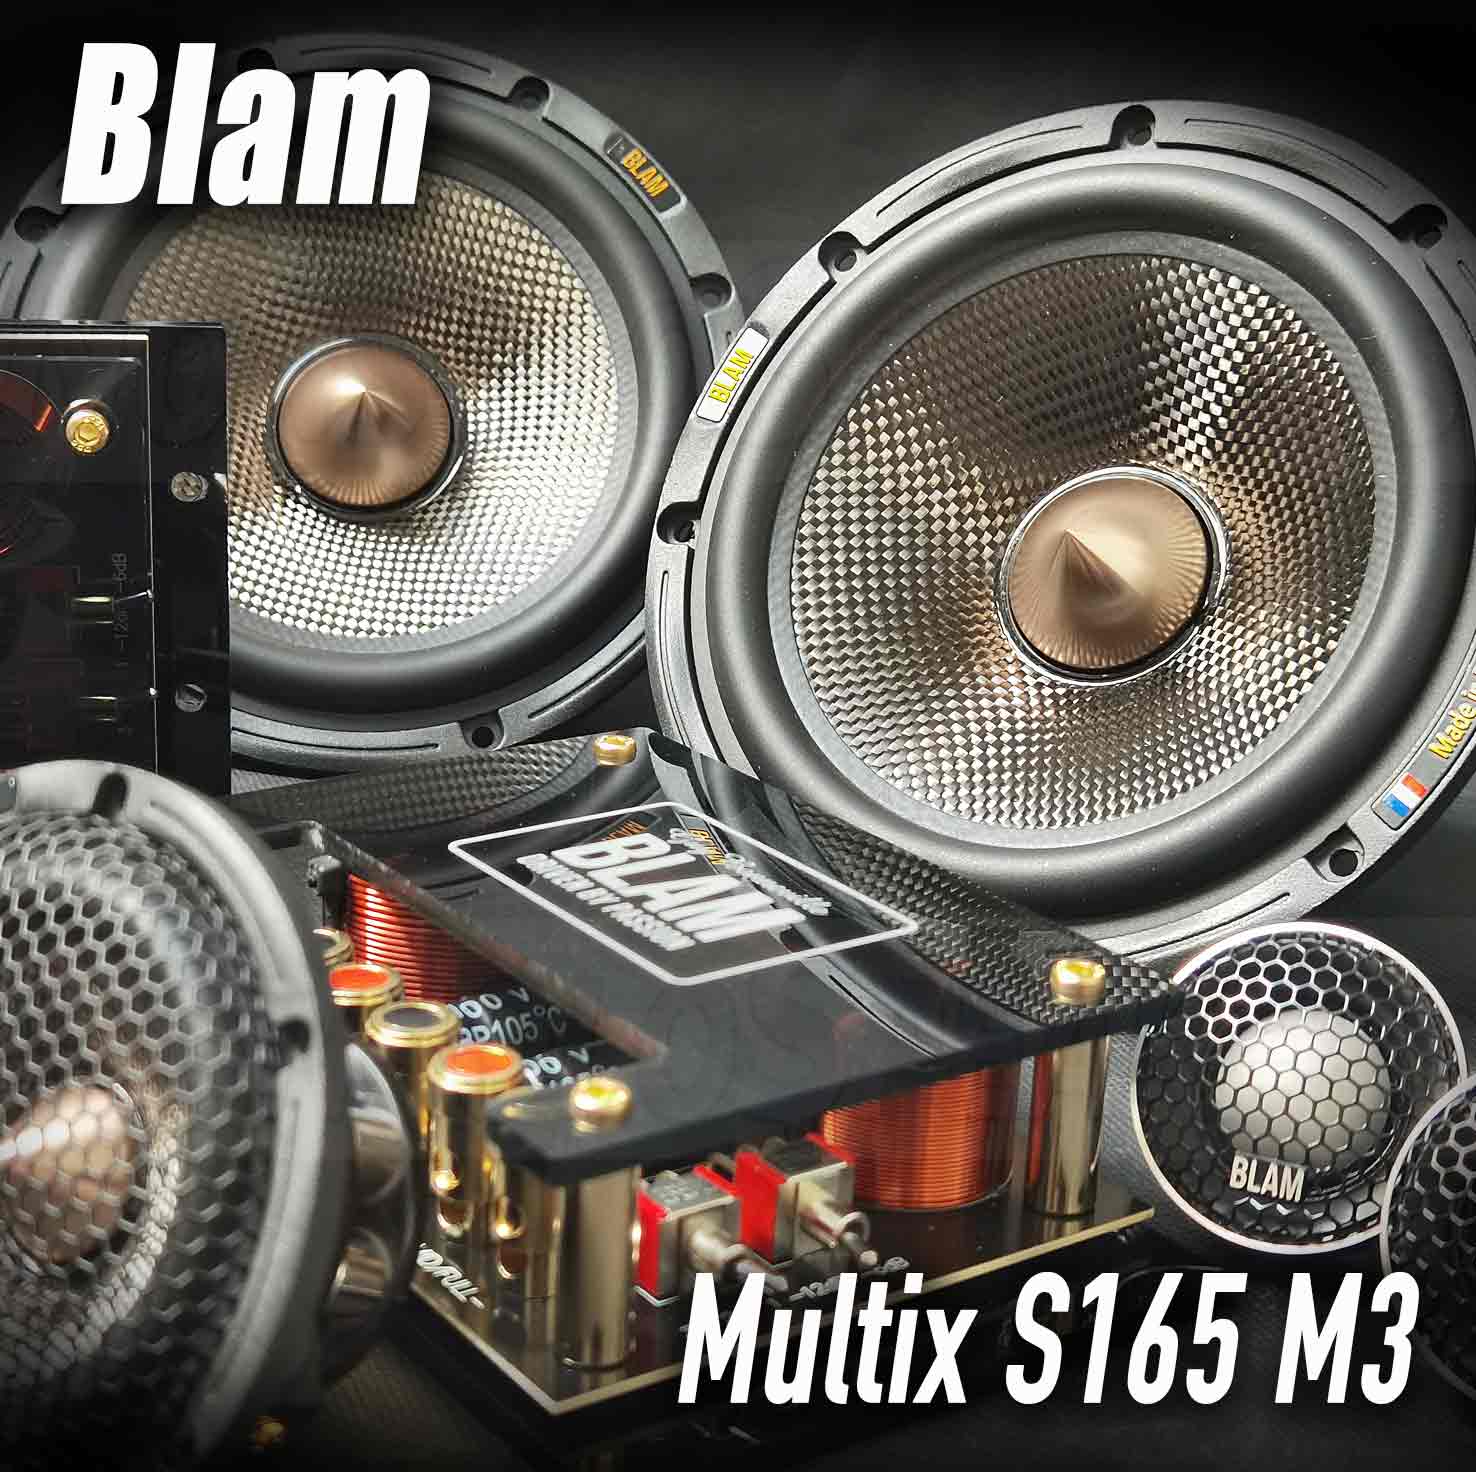 blam multix